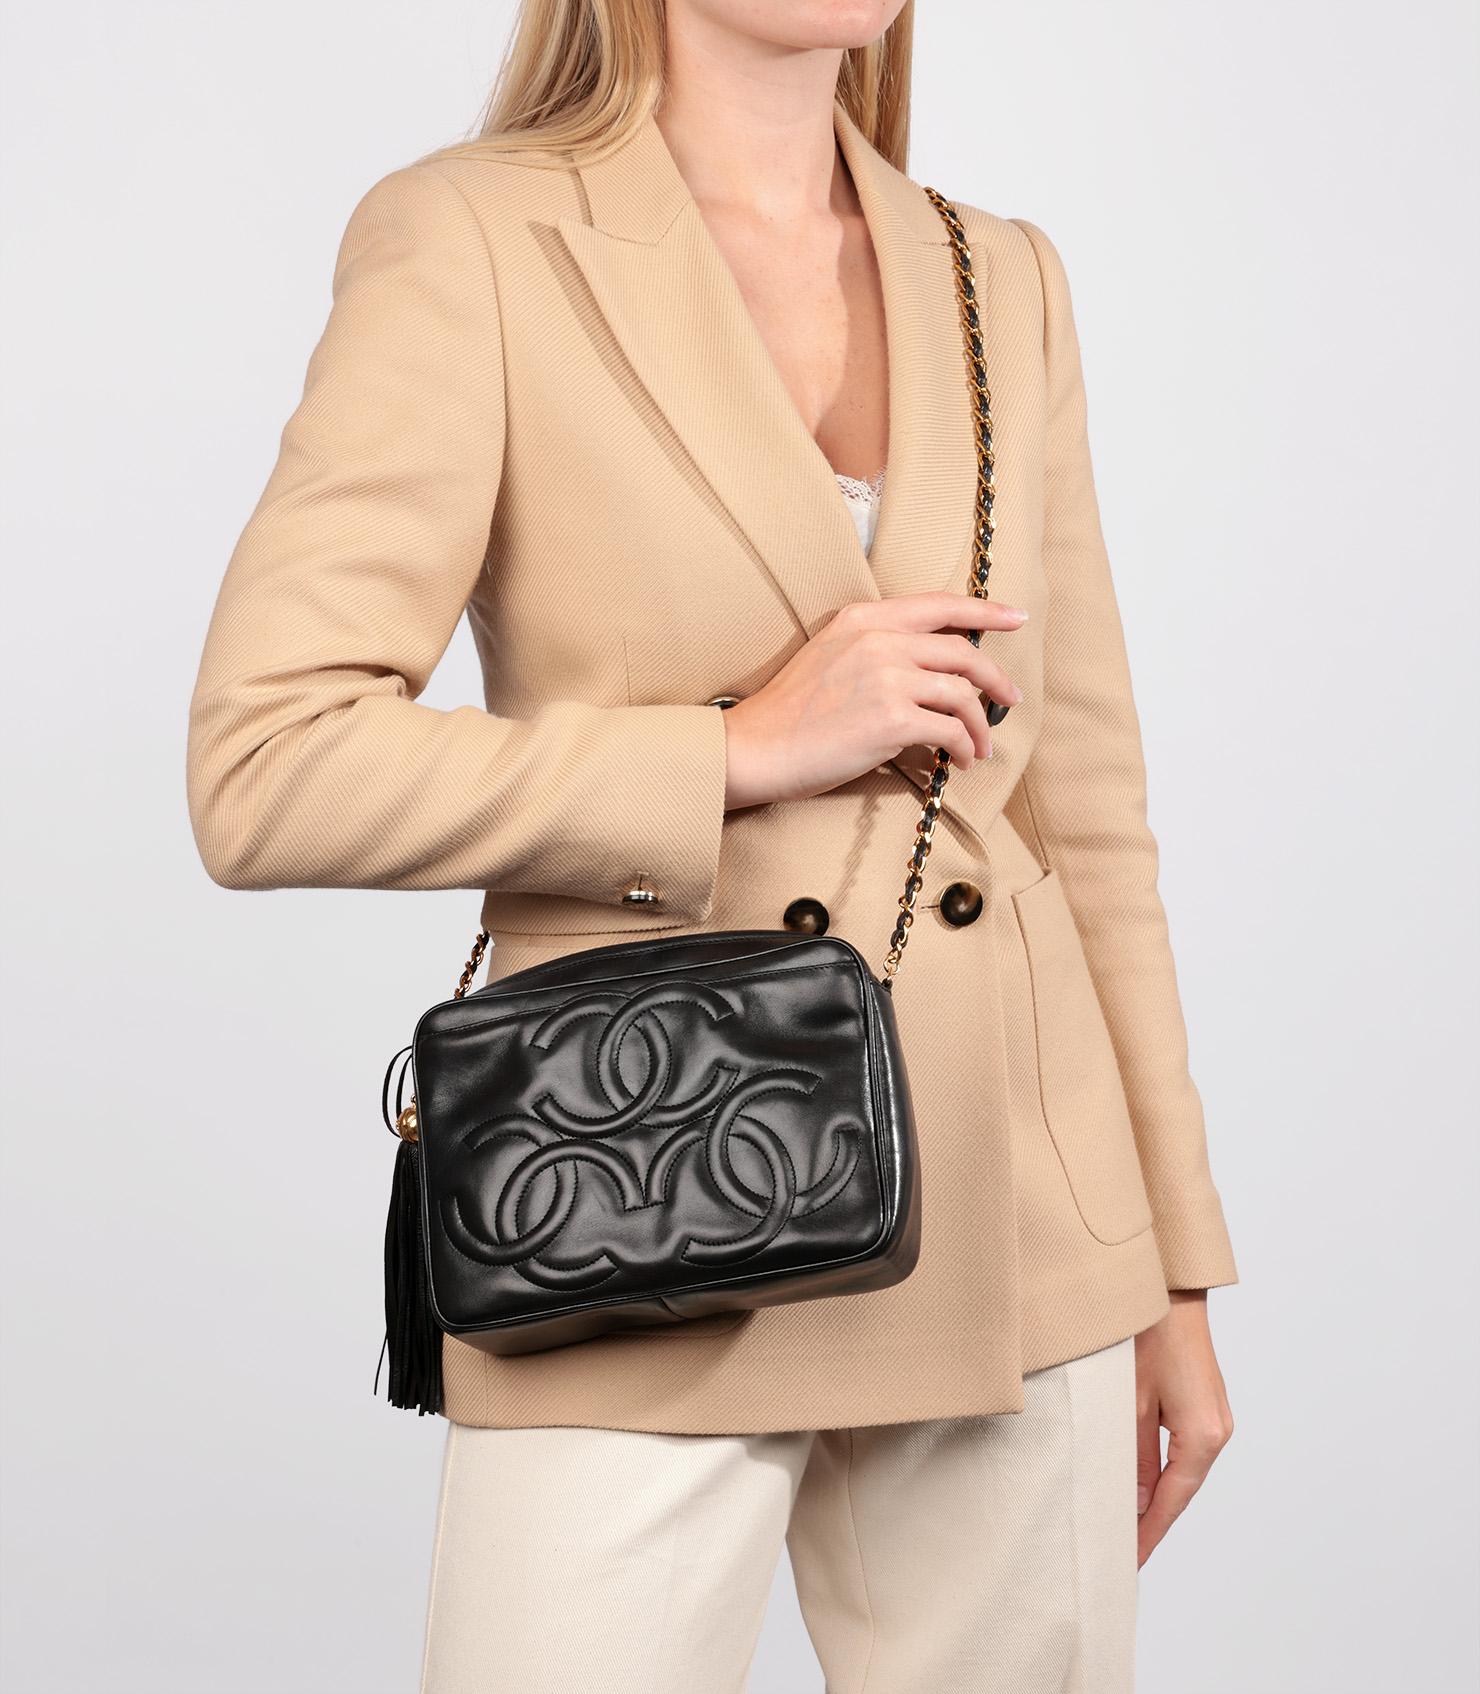 Chanel Black Smooth Lambskin Leather Vintage Small Fringe Timeless Camera Bag

Marque : Chanel
Modèle- Petit sac à franges intemporel pour appareil photo
Type de produit- Épaule
Numéro de série - 31*****
Age- Circa 1994
Accompagné de : sac à